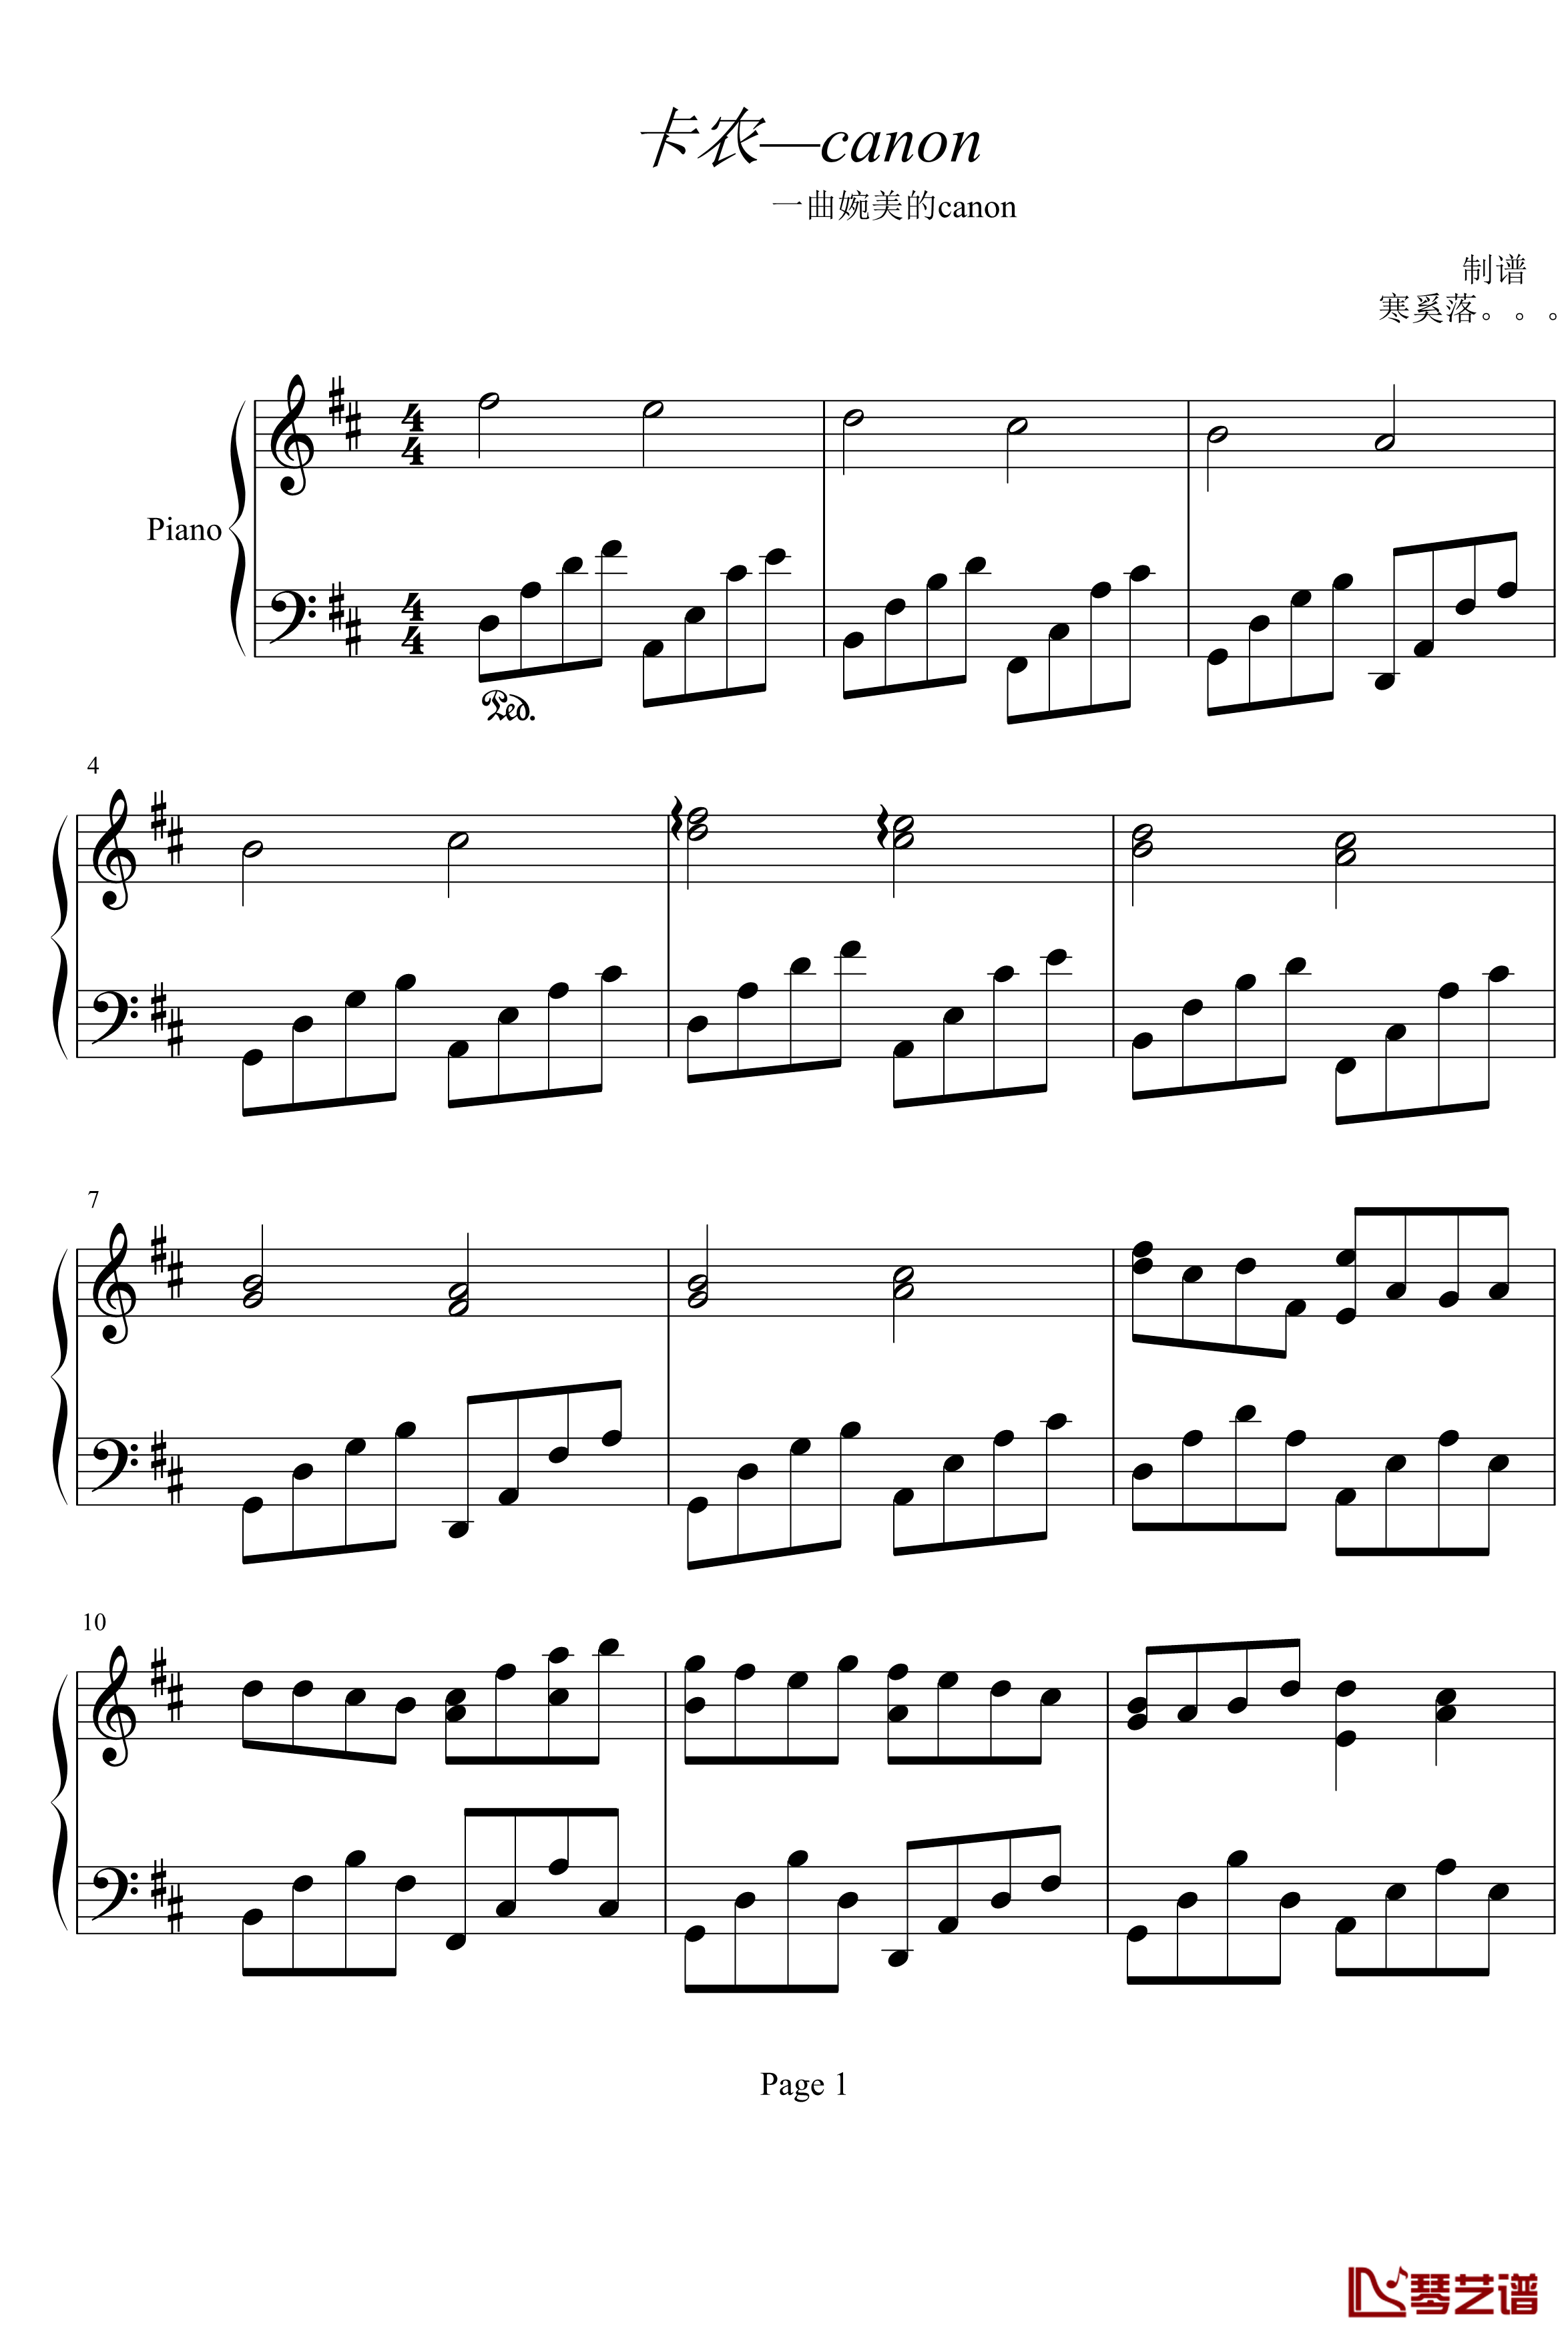 卡农钢琴谱-canon-帕赫贝尔-Pachelbel1